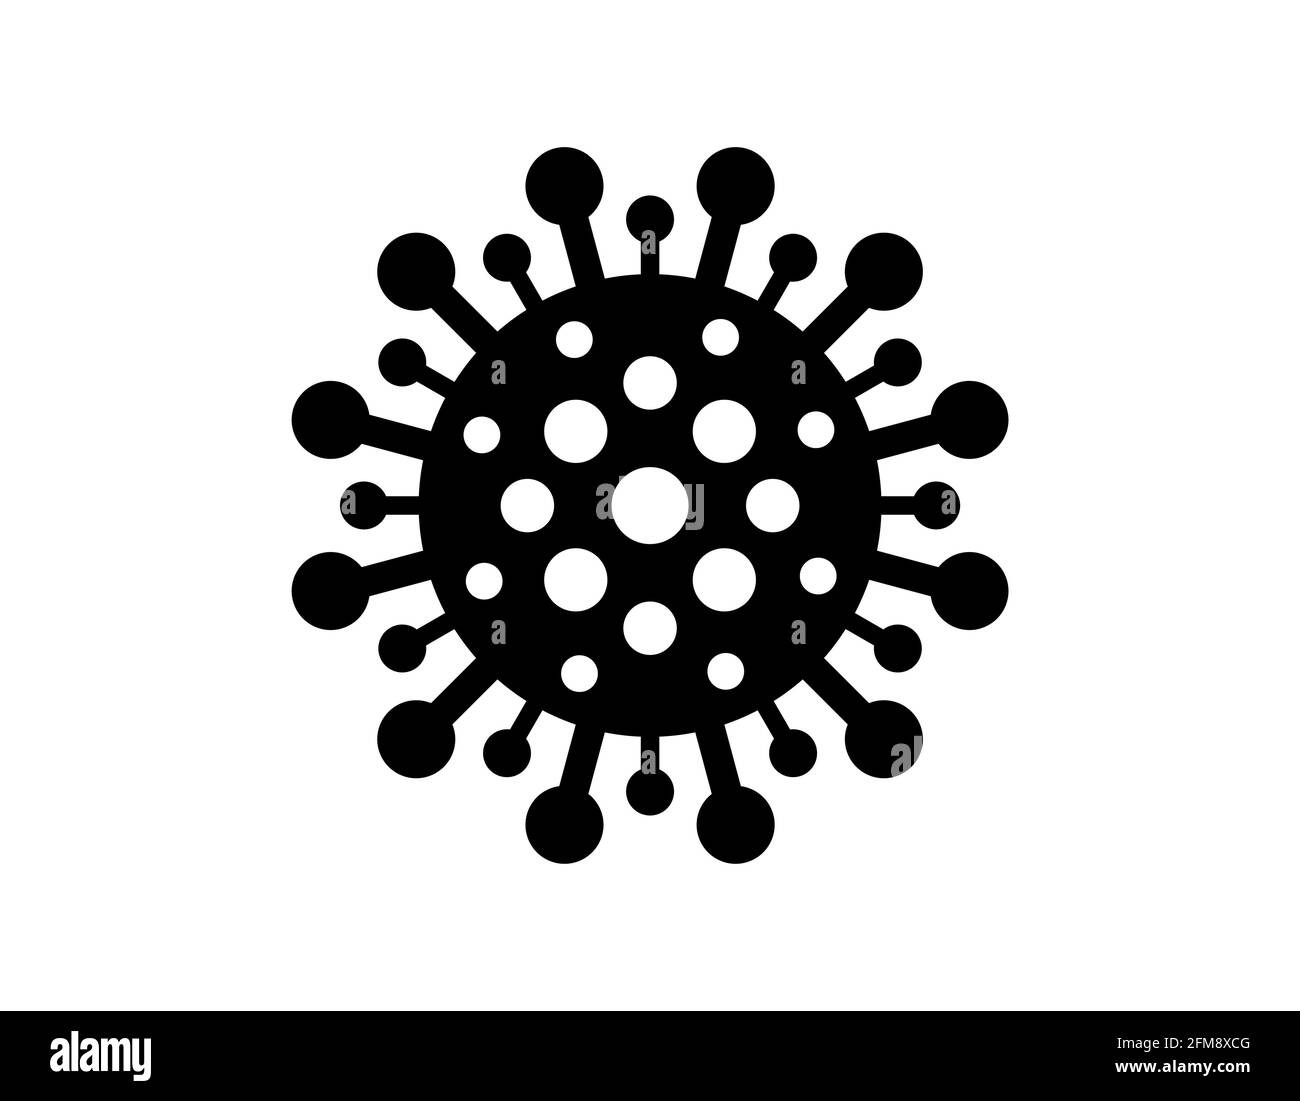 Coronavirus Bakterien Zelle schwarzes Symbol. 2019-nCoV-Zeichen für einen neuen Corona-Virus. Atemwegsinfektion Risiko Krankheit und covid-19 Grippe-Epidemie Emblem. Stock Vektor